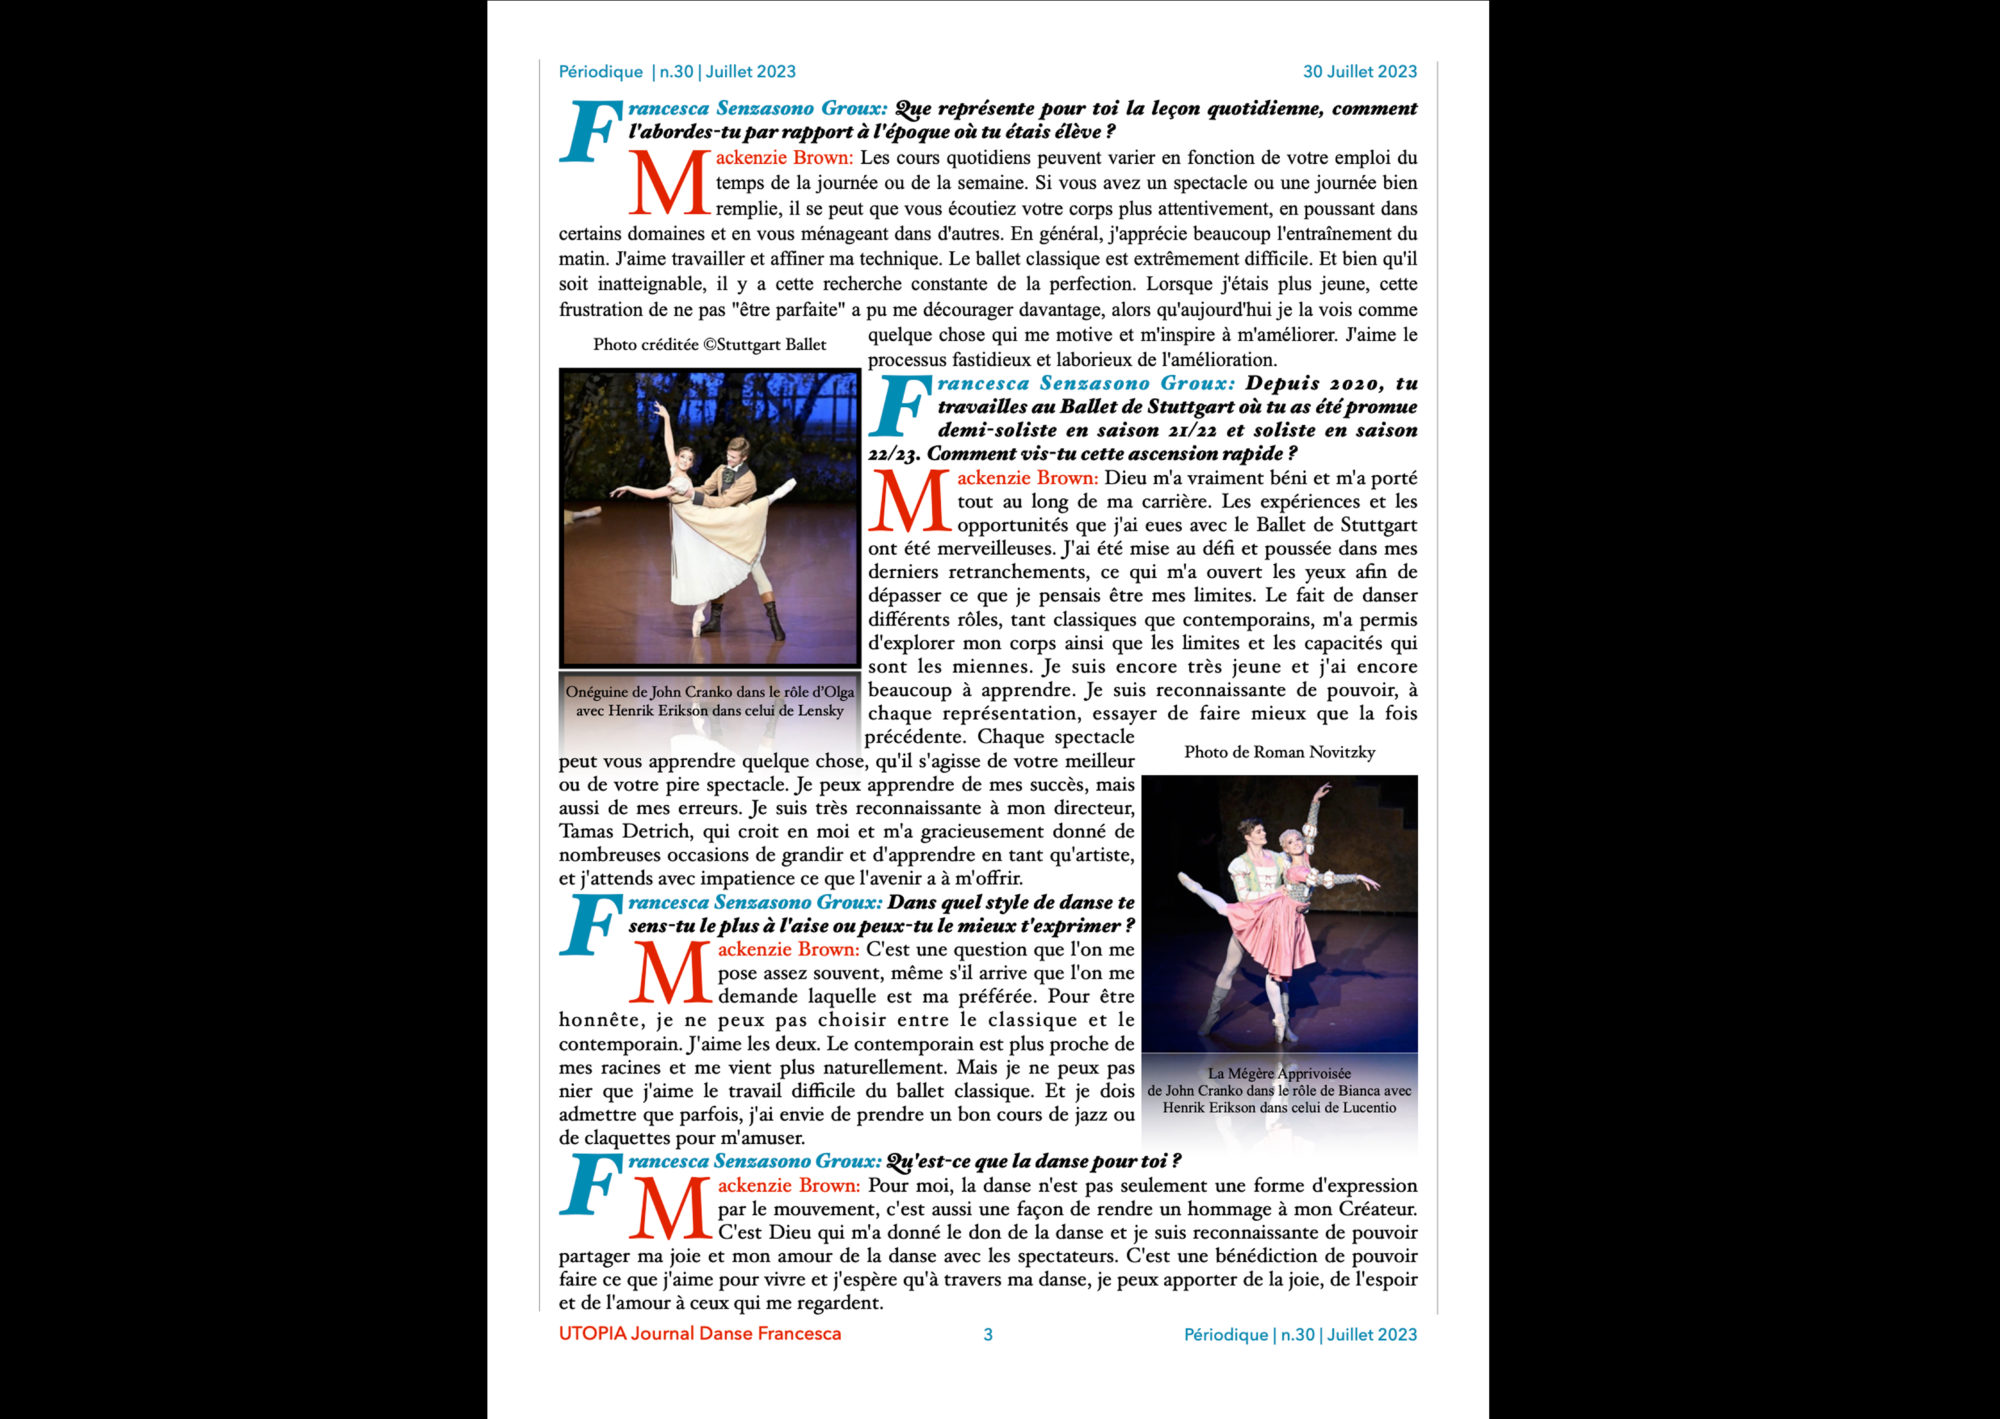 ©UTOPIA Journal Danse Francesca Périodique n.30 30 juillet 2023 page 3